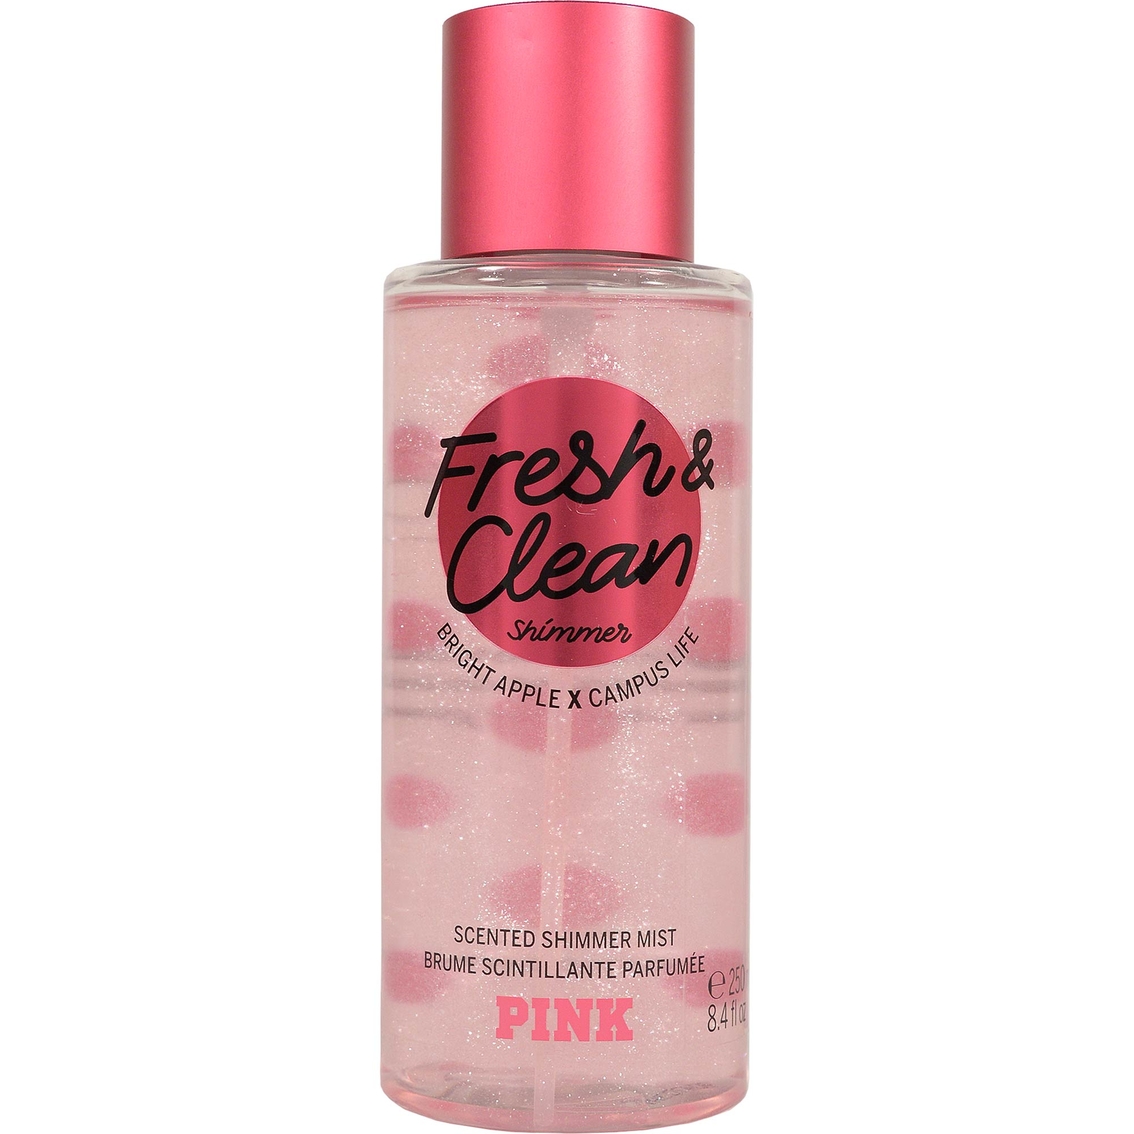 victoria's secret pink fresh & clean body mist